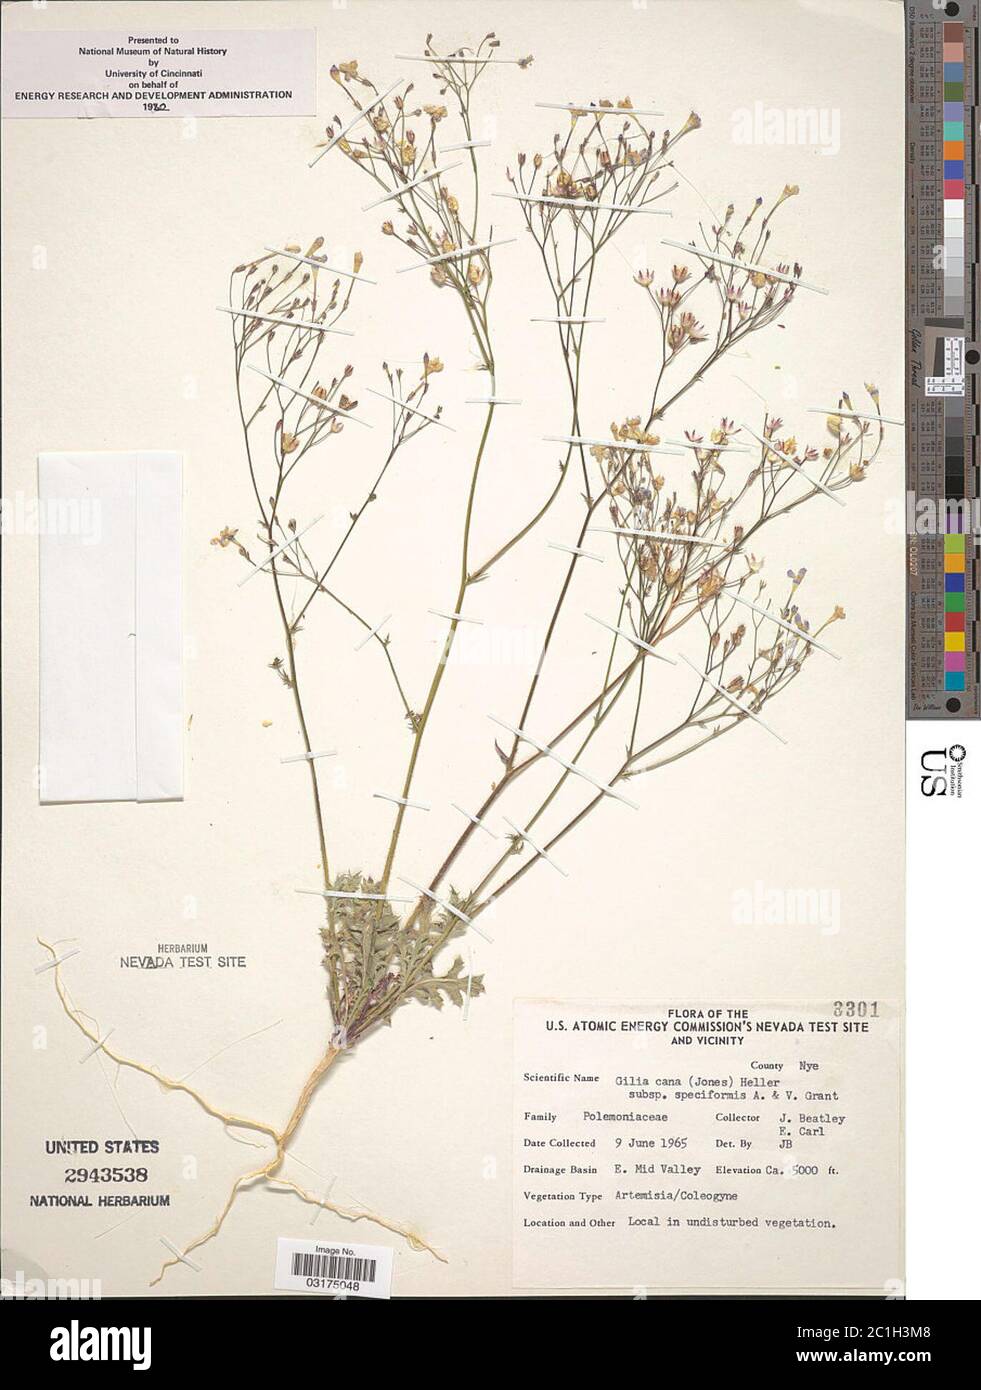 Gilia cana subsp speciformis AD Grant VE Grant Gilia cana subsp speciformis AD Grant VE Grant. Stock Photo